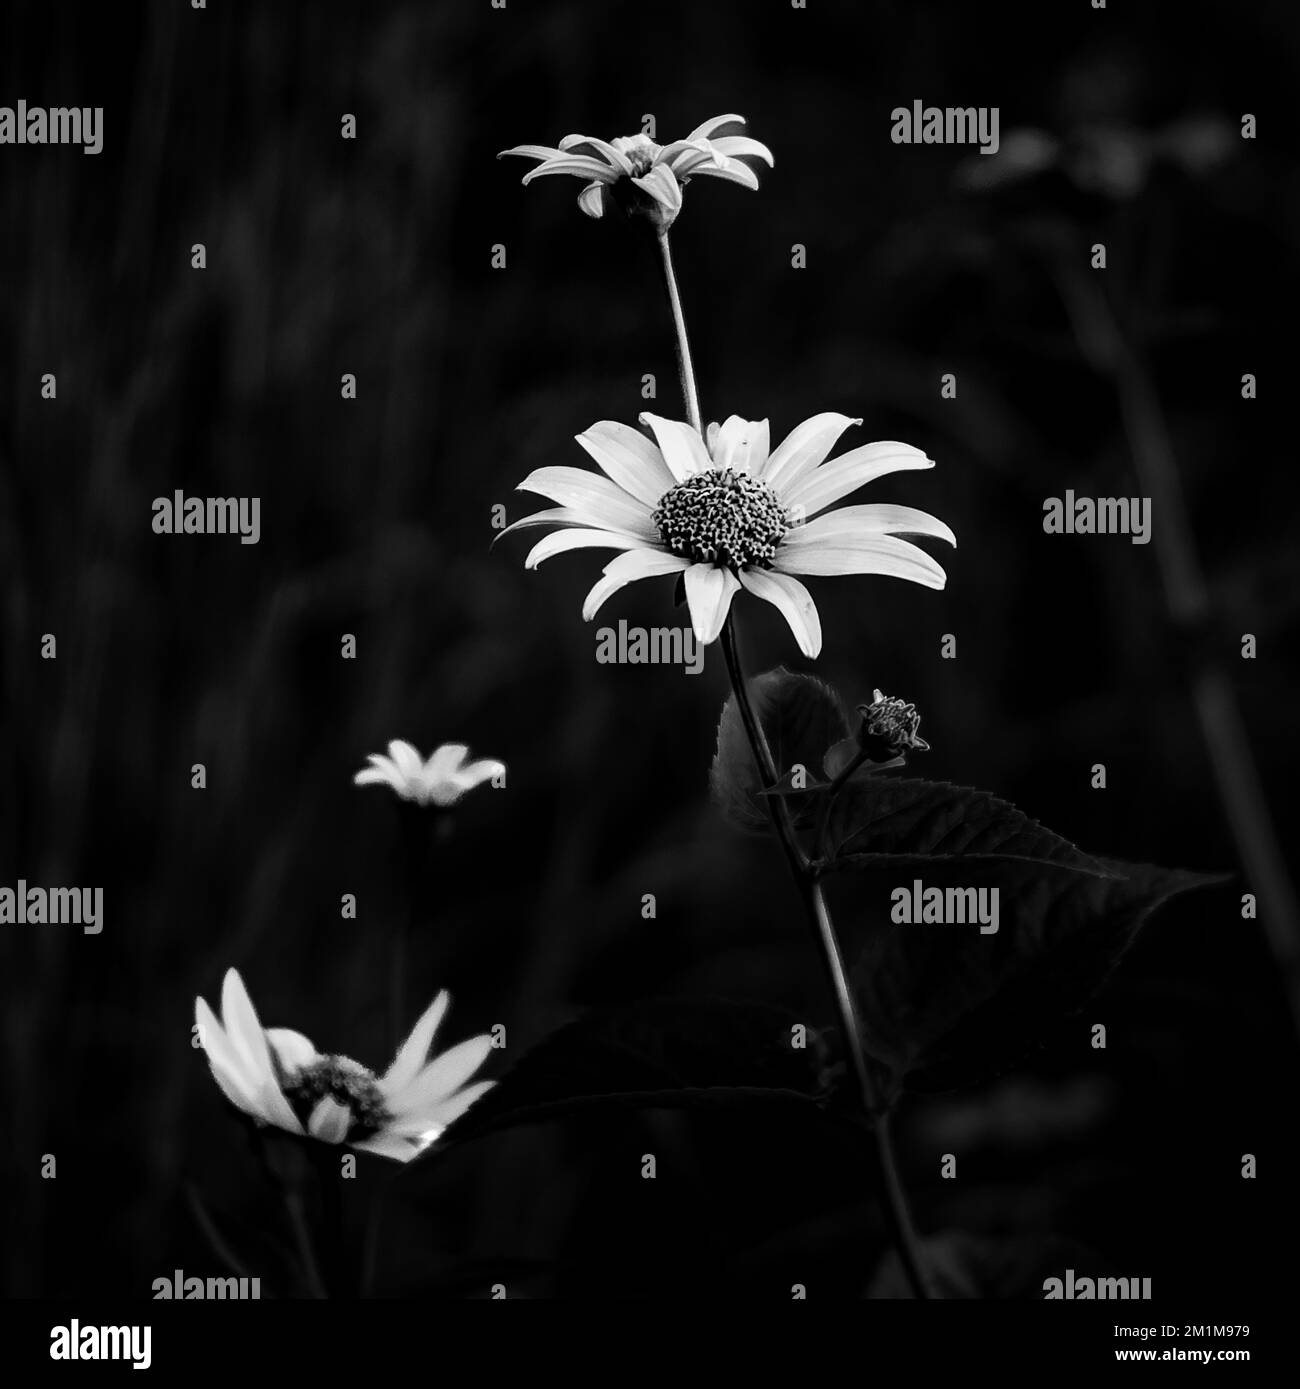 Immagine in scala di grigi di un comune fiore a margherita su uno sfondo sfocato Foto Stock